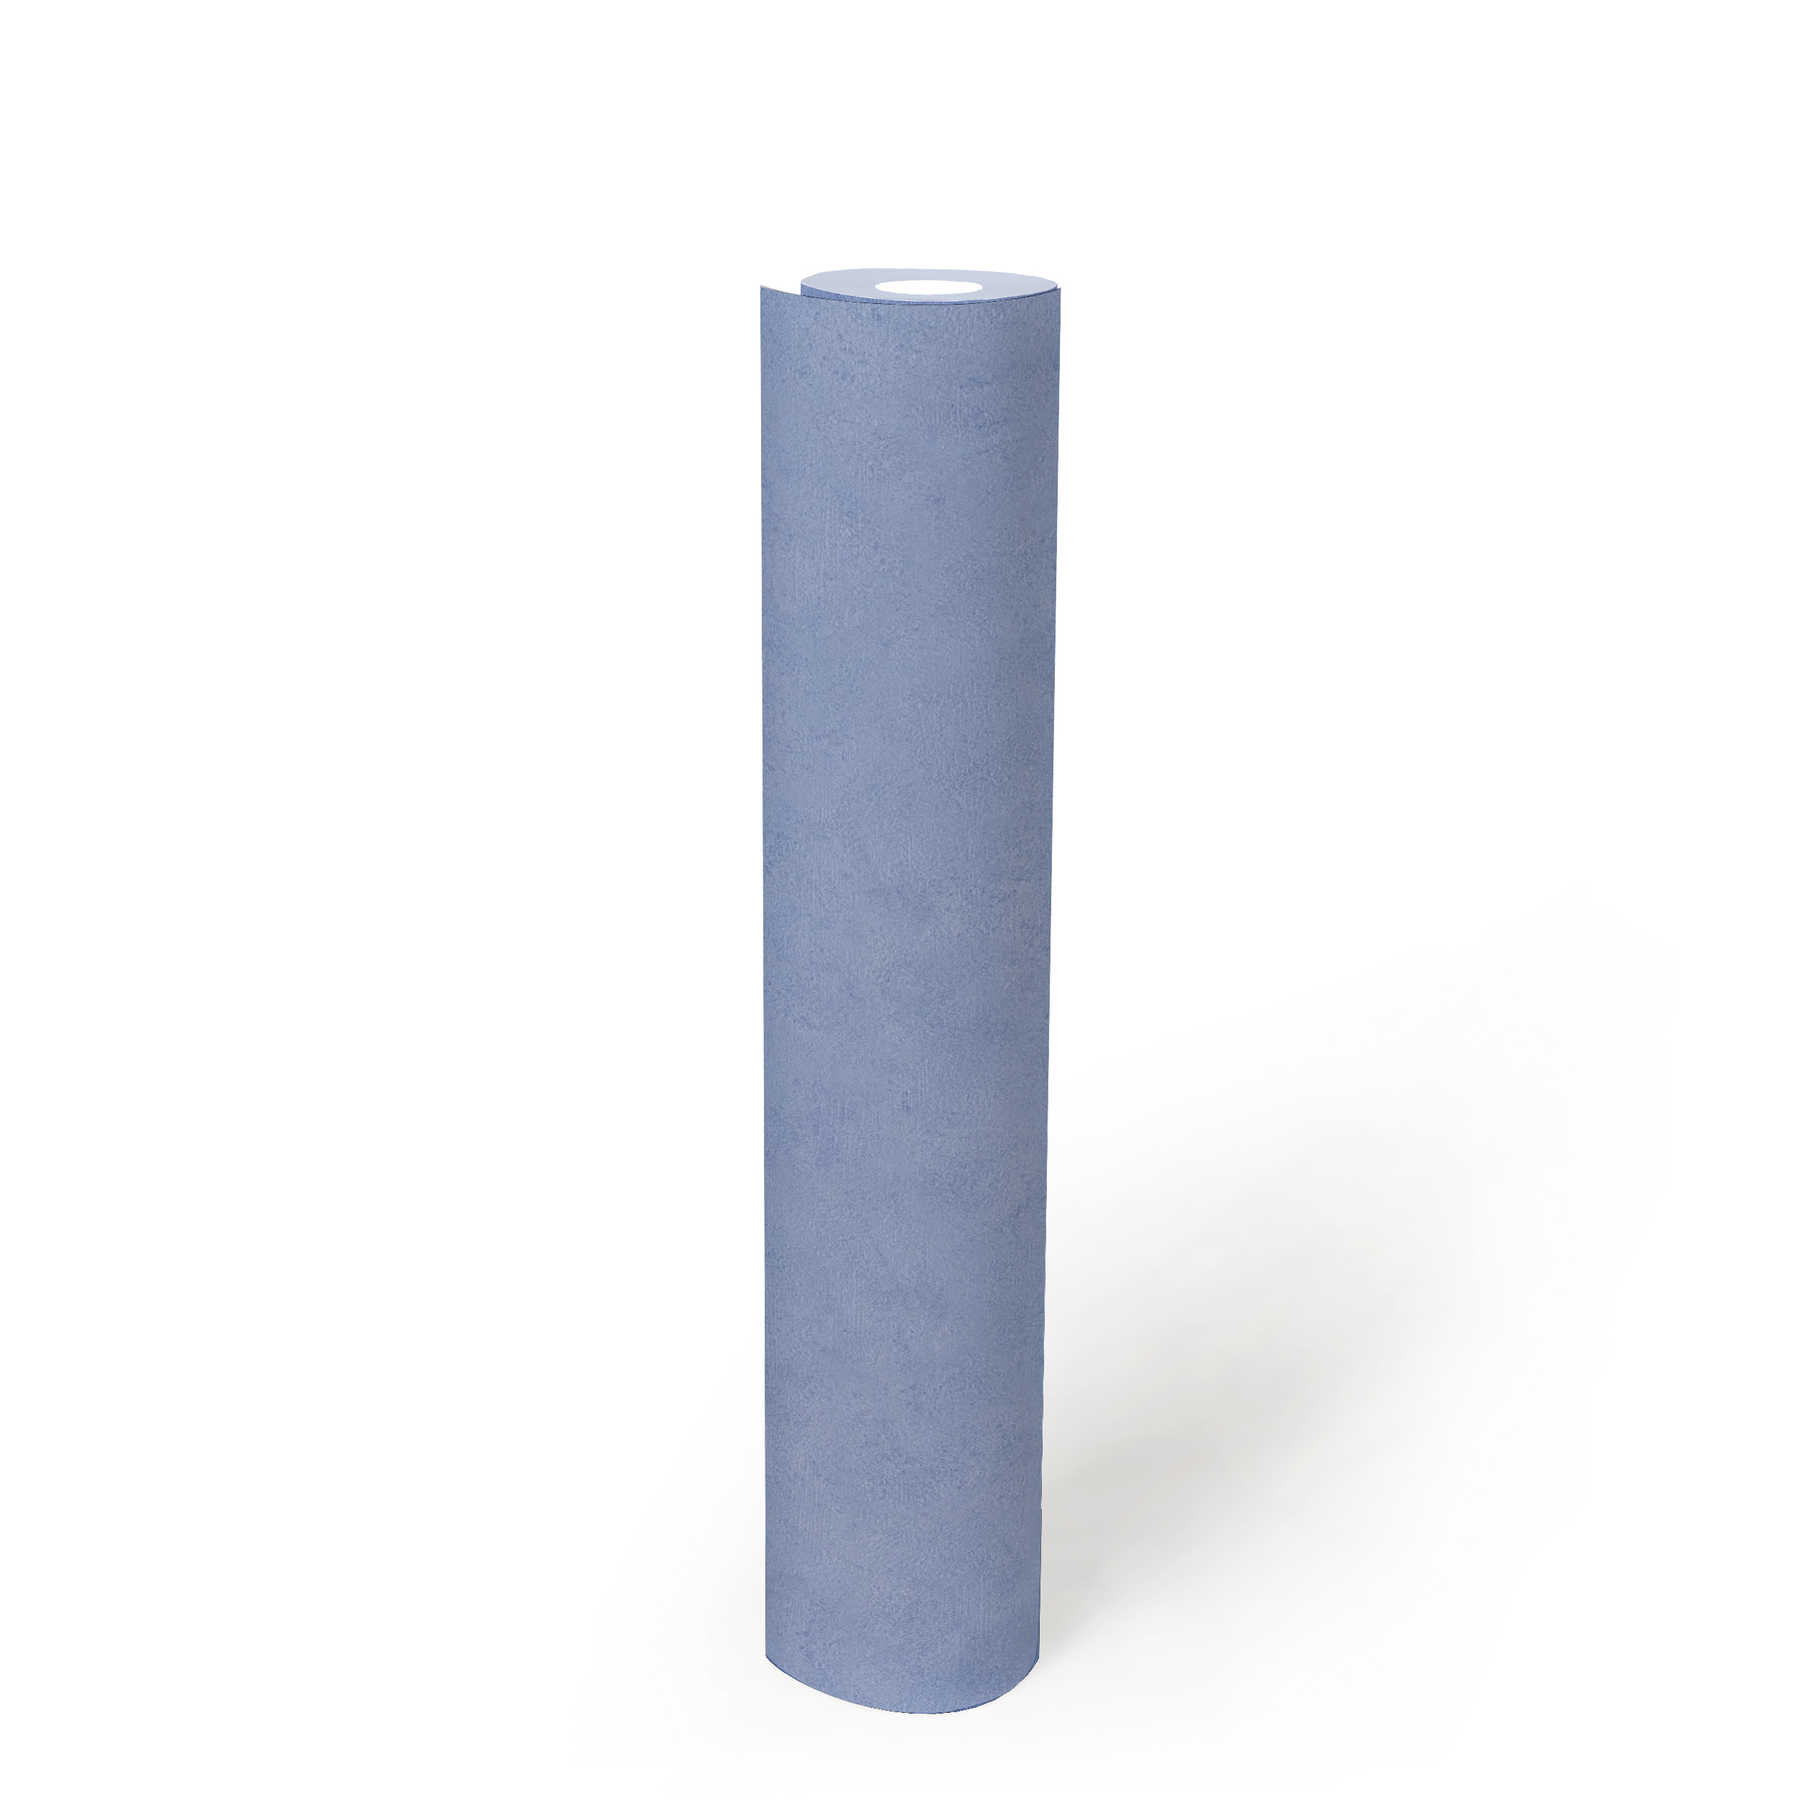             Blauw luik & structuurpatroon papierbehang - Blauw
        